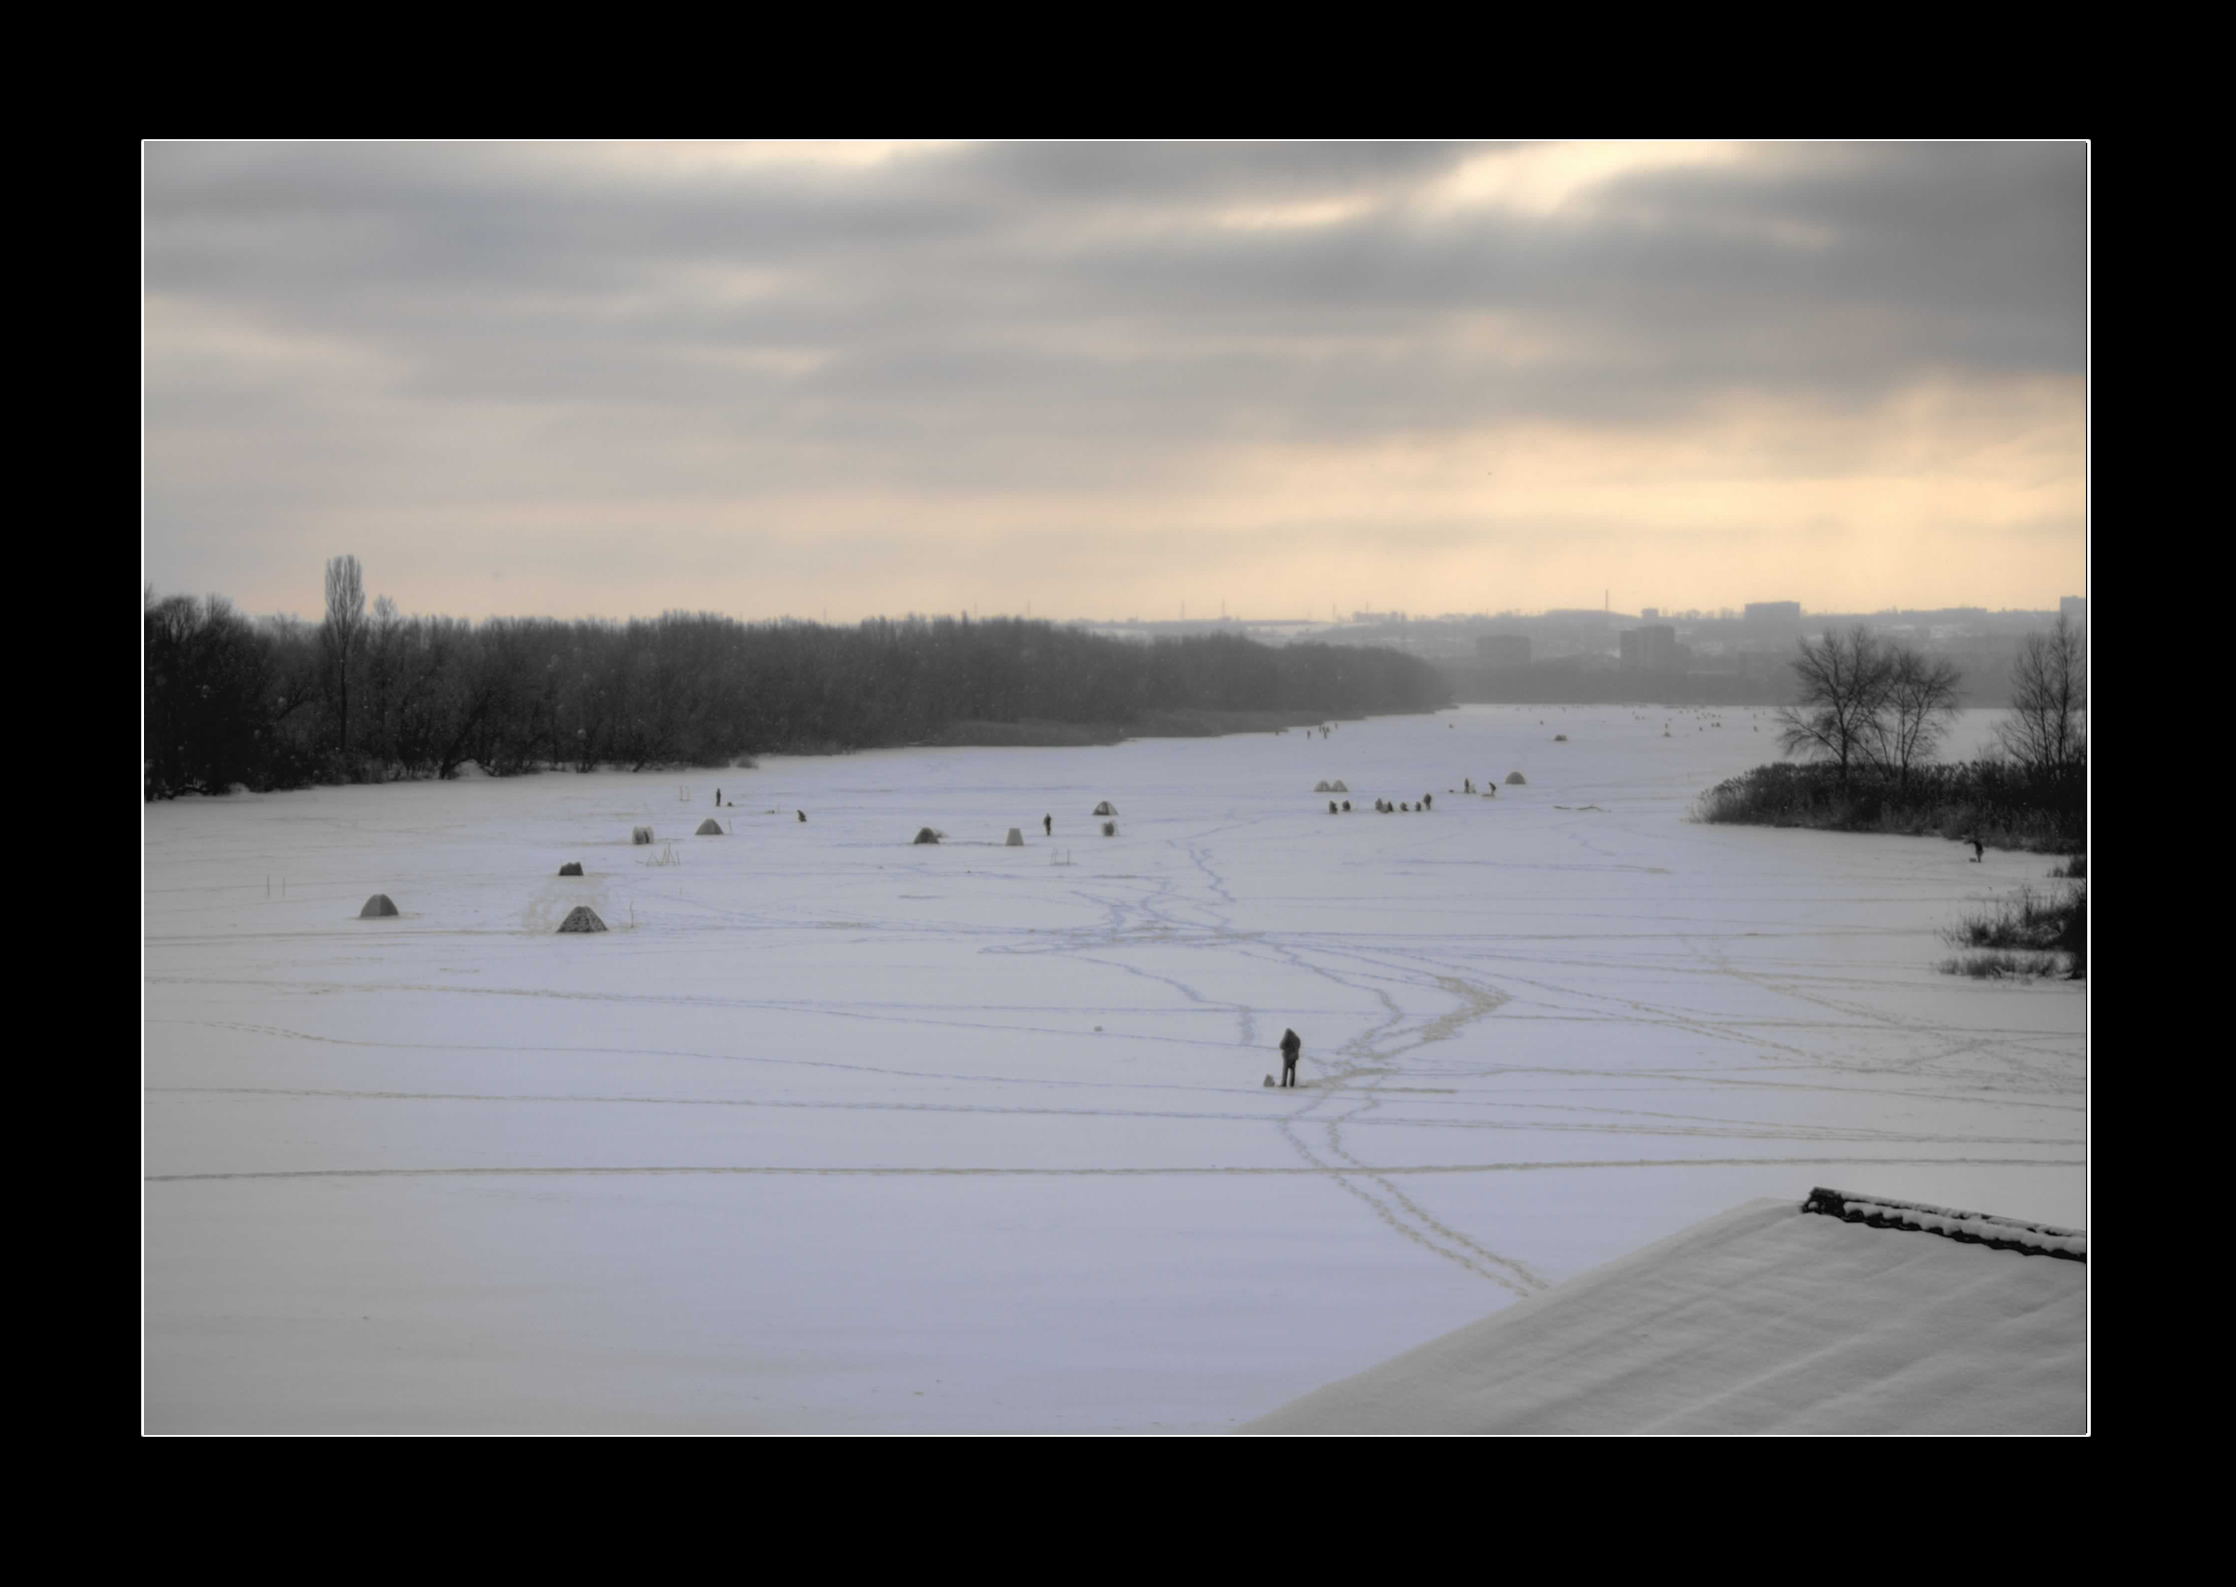 Dnipropetrovsk Ucraina HDR Fiume Dnieper Il fiume Dnieper ghiacciato